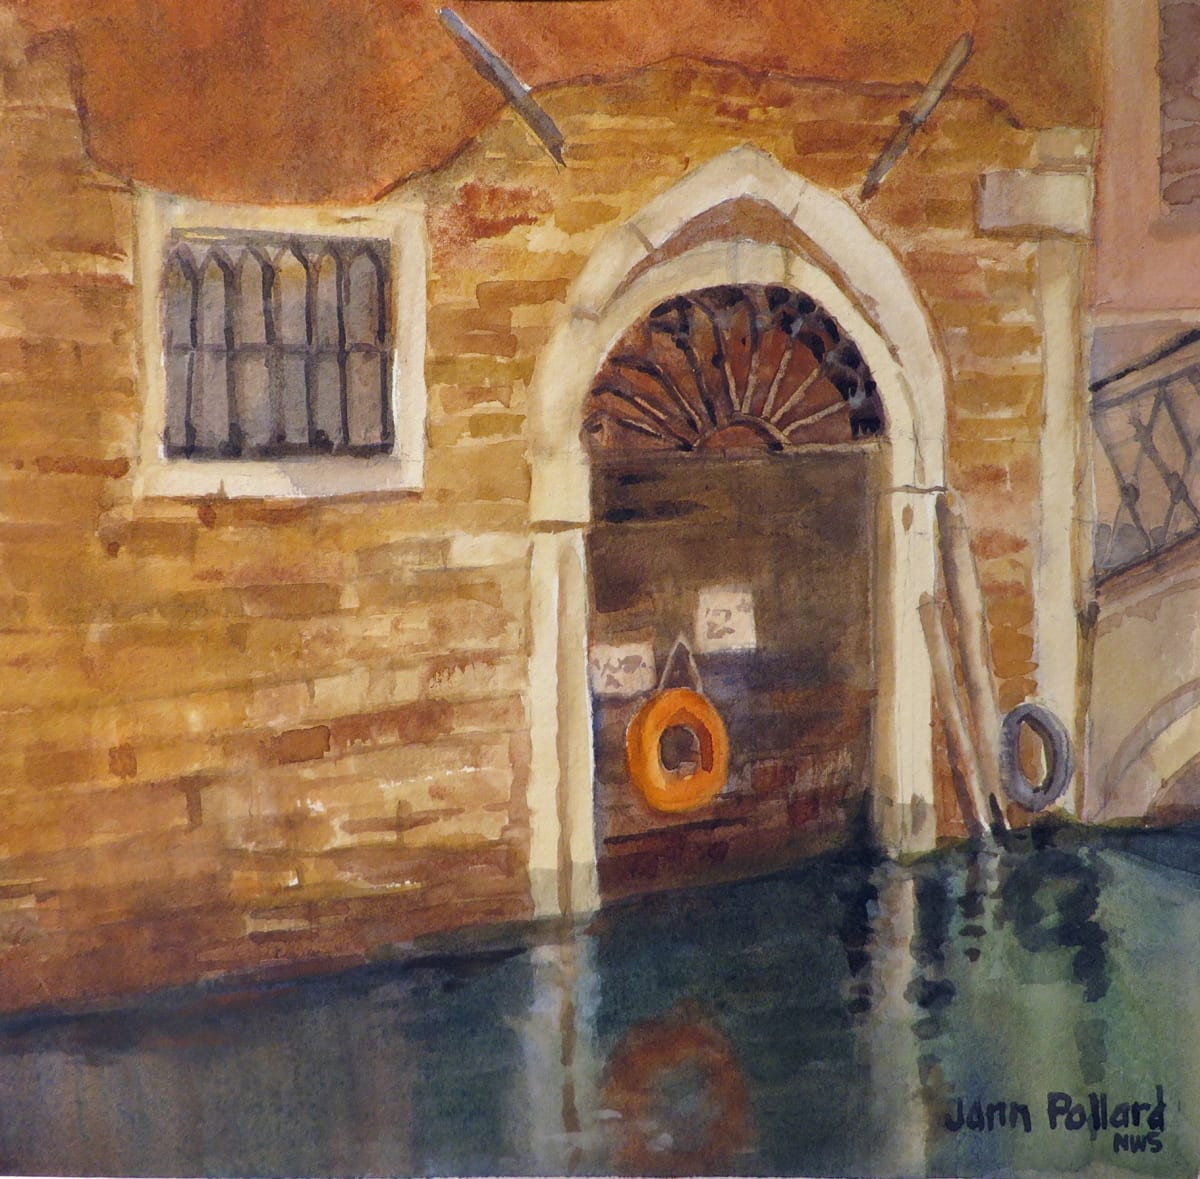 Venetian Door Reflections by Jann Lawrence Pollard  Image: Venetian Door Reflections